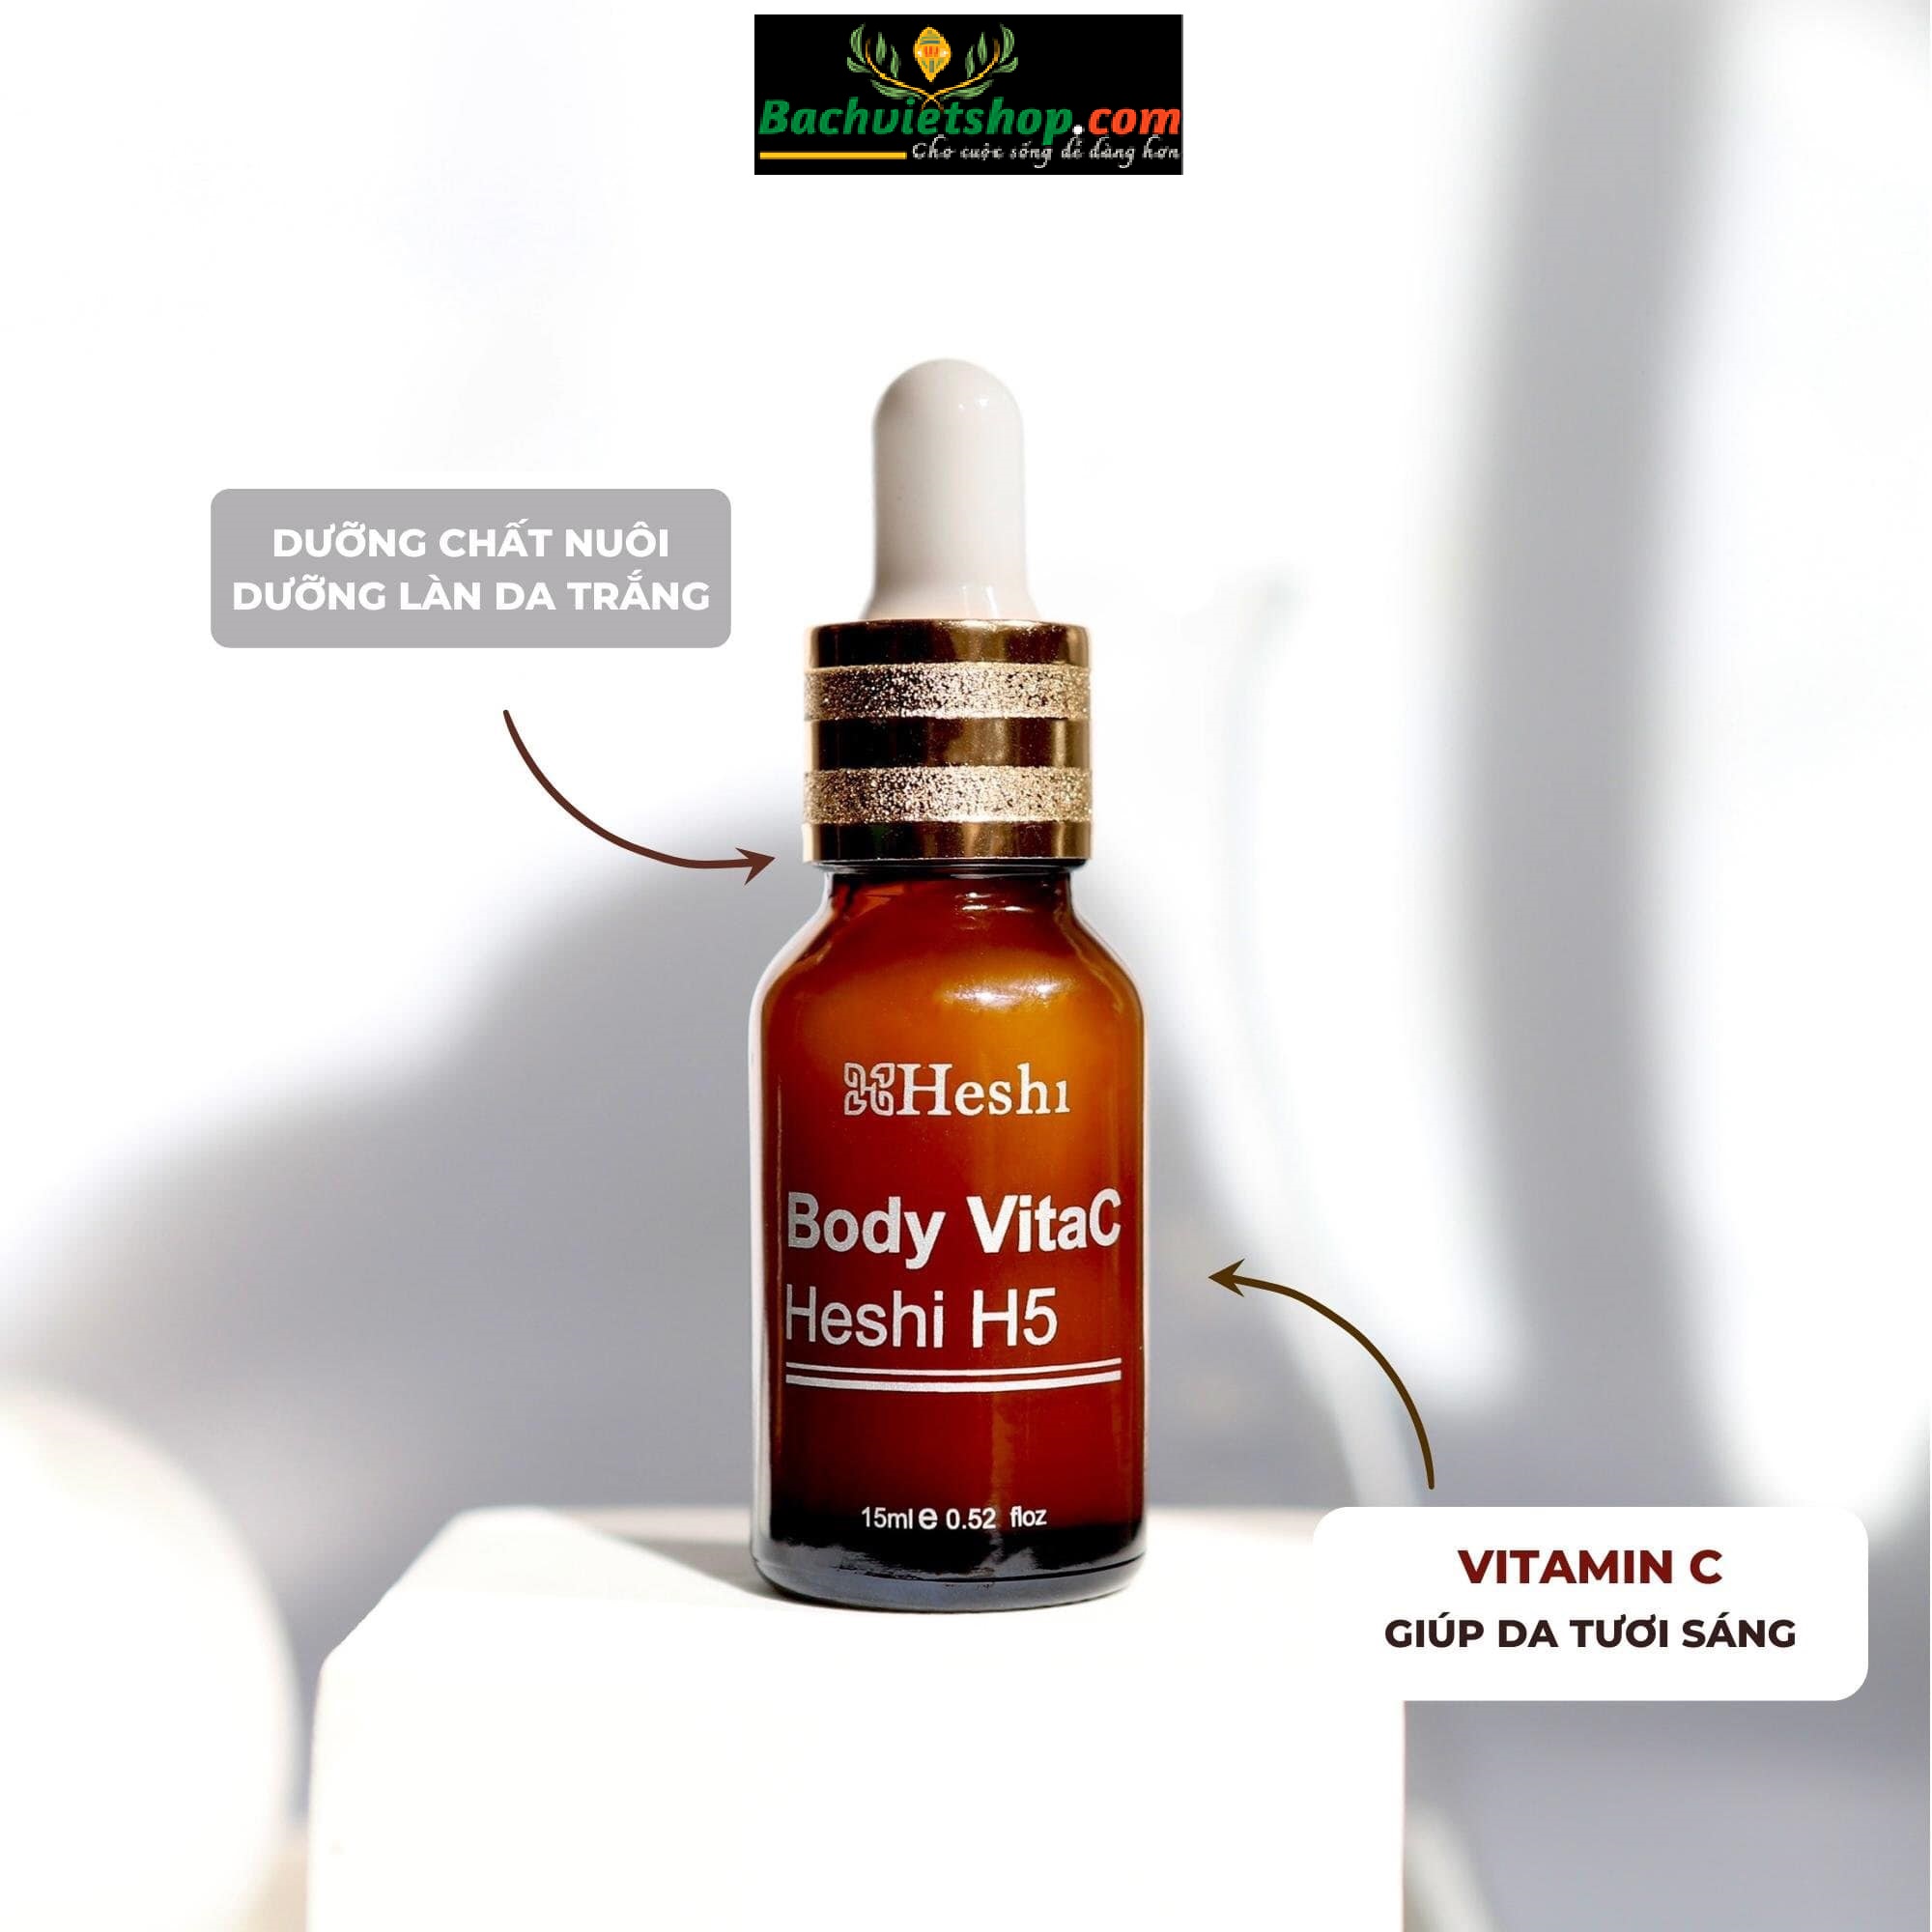 Serum Body VitaC Heshi H5 - Cam kết hiệu quả nhanh, không gây kích ứng, sử dụng được cho mọi làn da